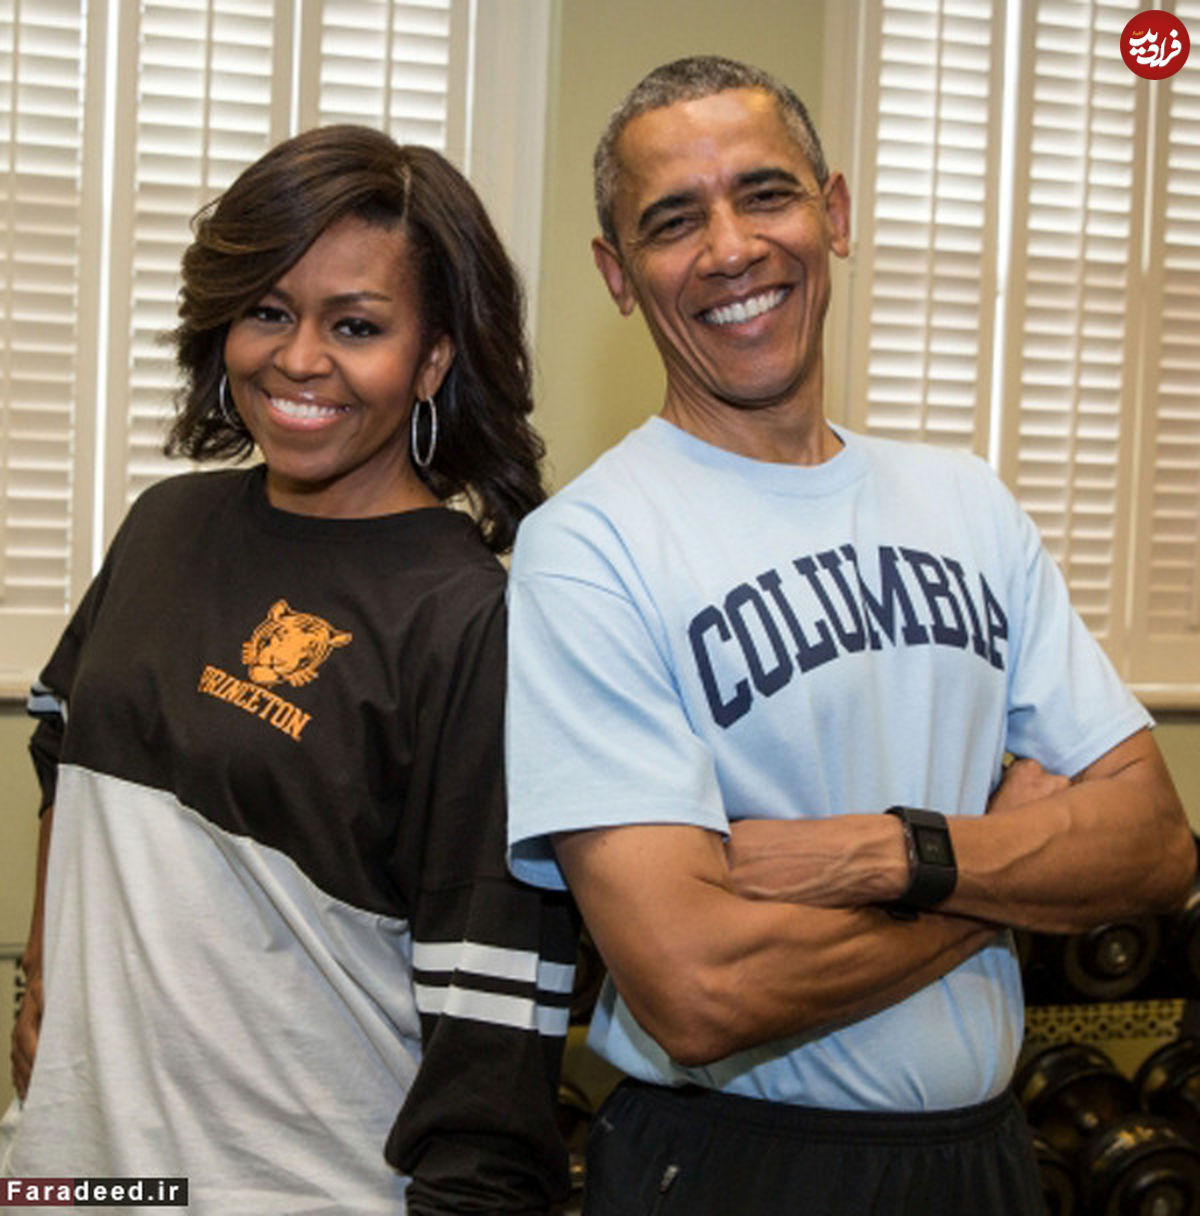 (تصاویر) به دنبال تصویر خودمانی از اوباما